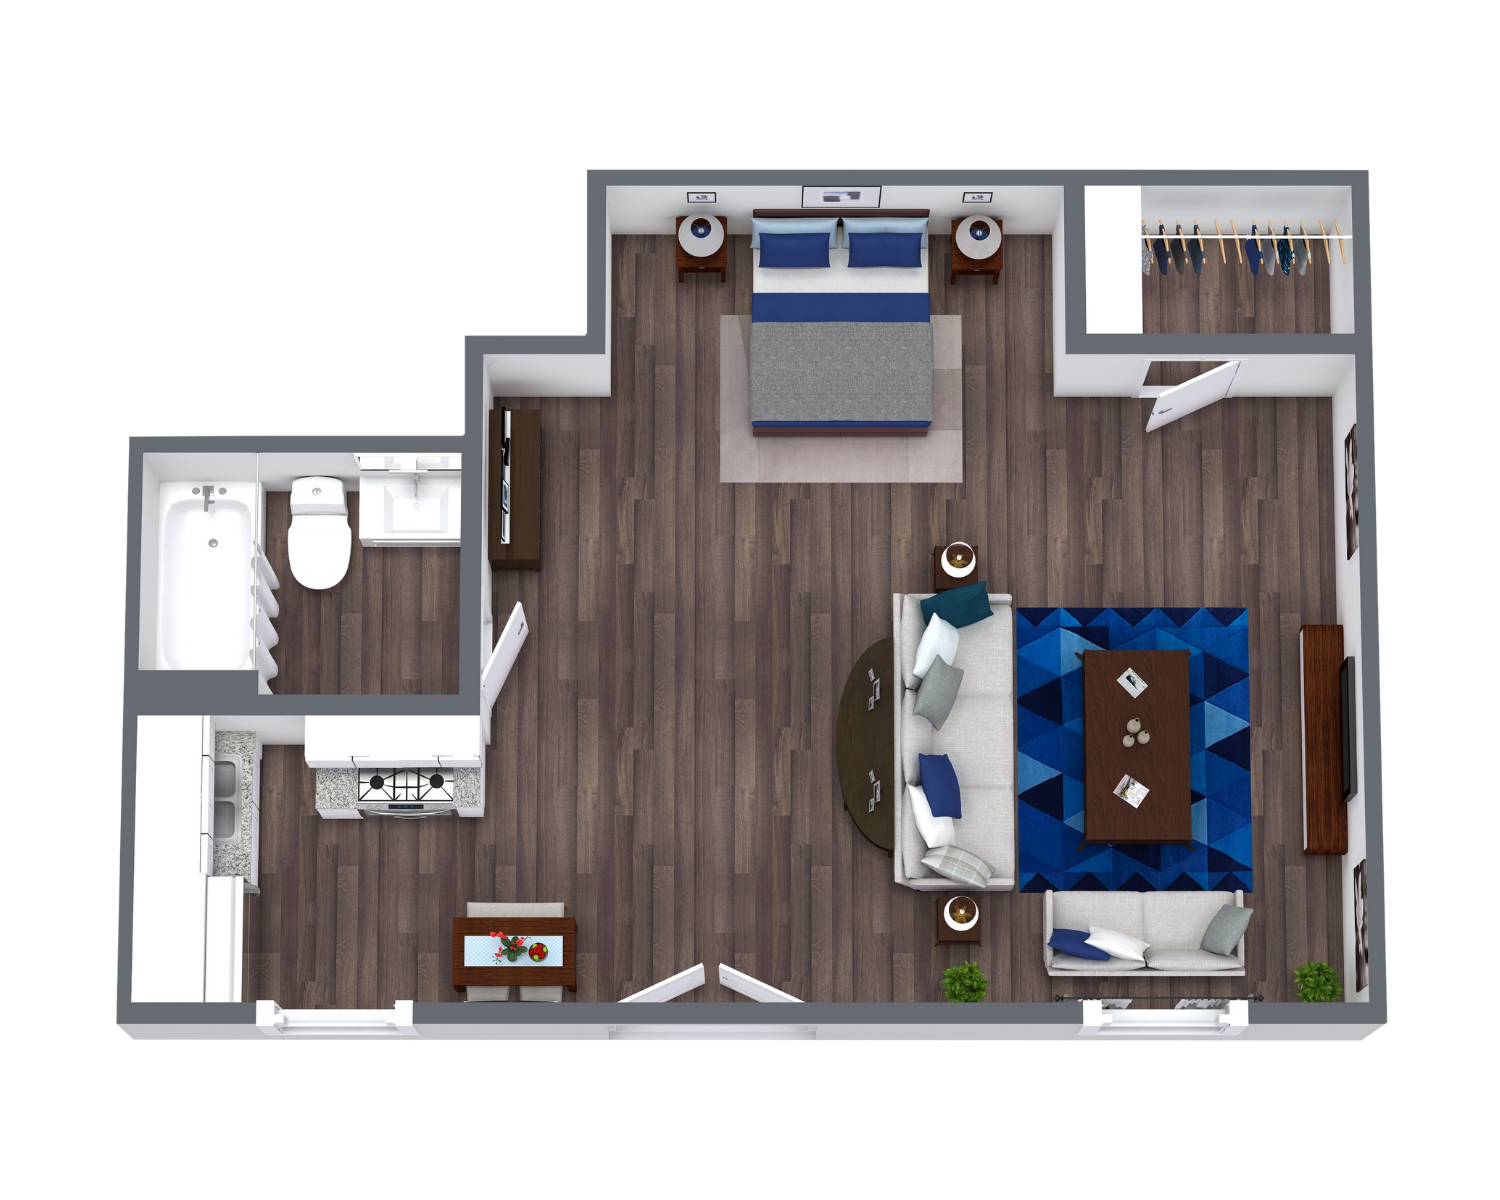 studio apartment floor plan at 550 square feet